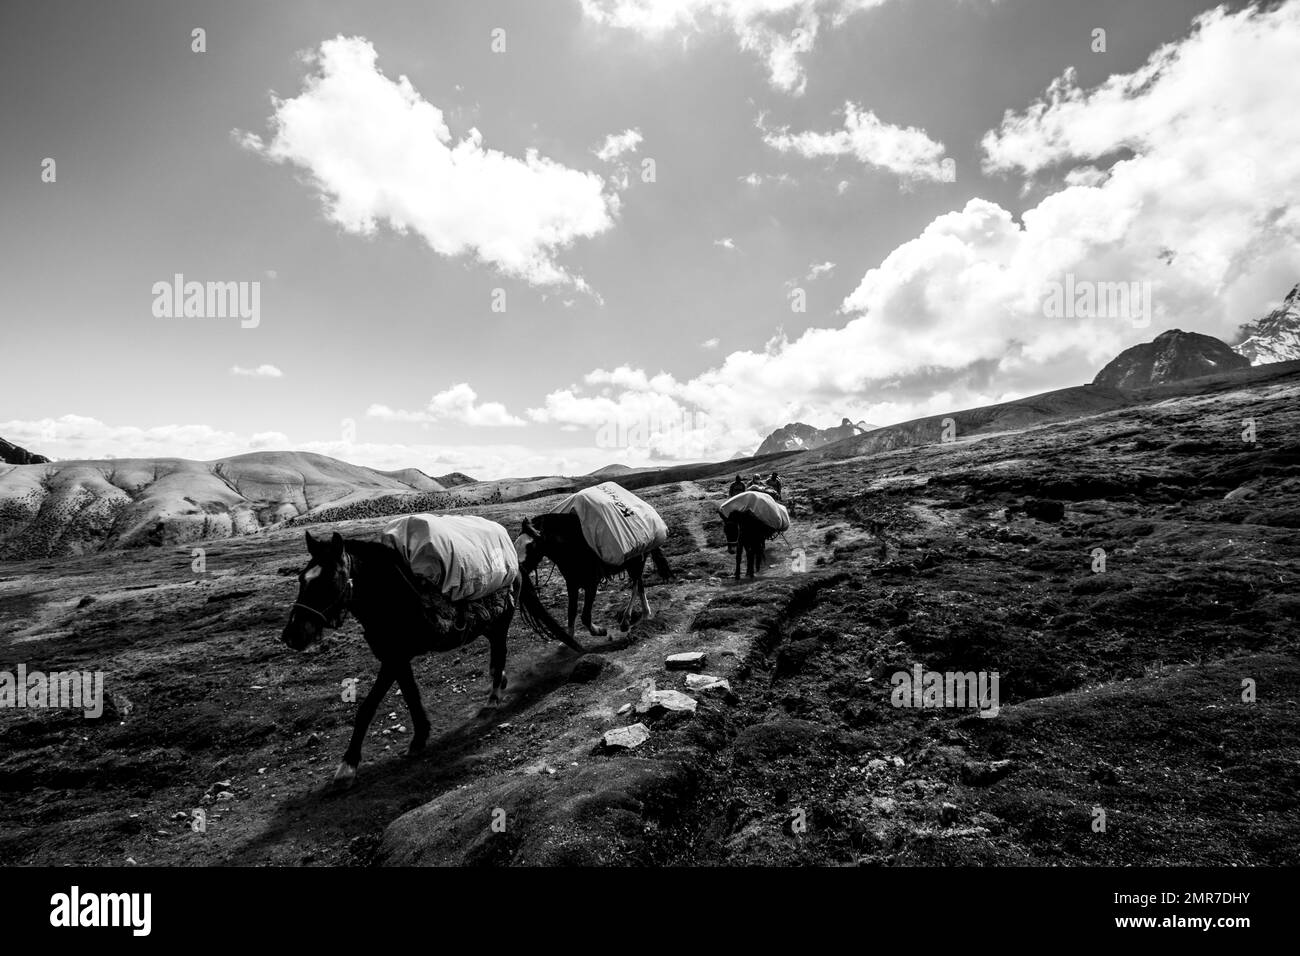 Emballez les chevaux dans une expédition dans les Andes péruviennes Banque D'Images